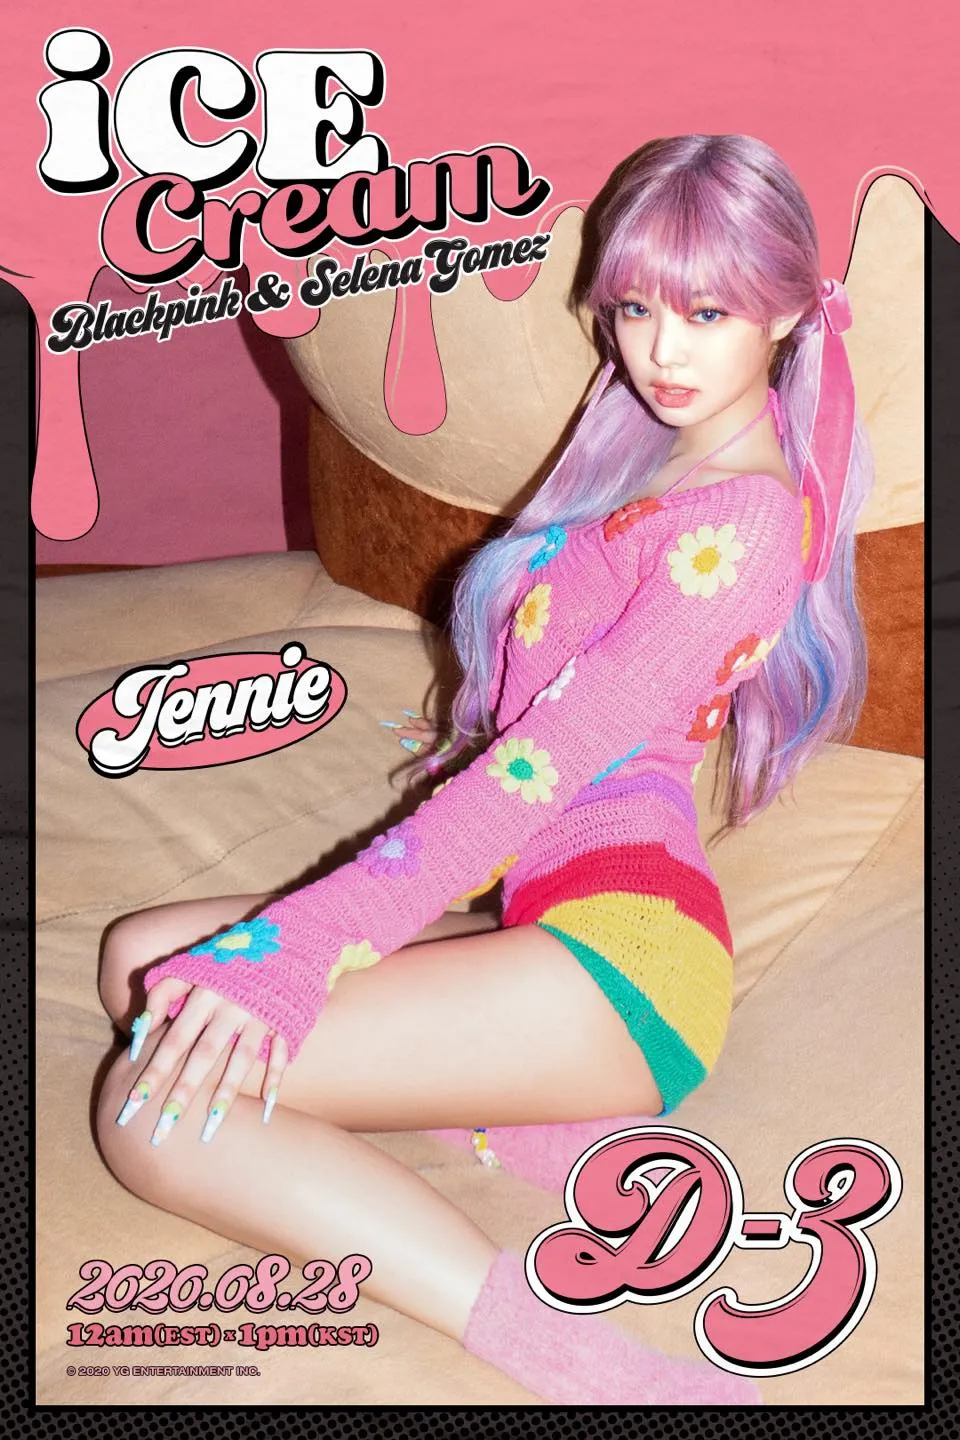 voh-jennie-teaser-icecream-blackpink-anh1